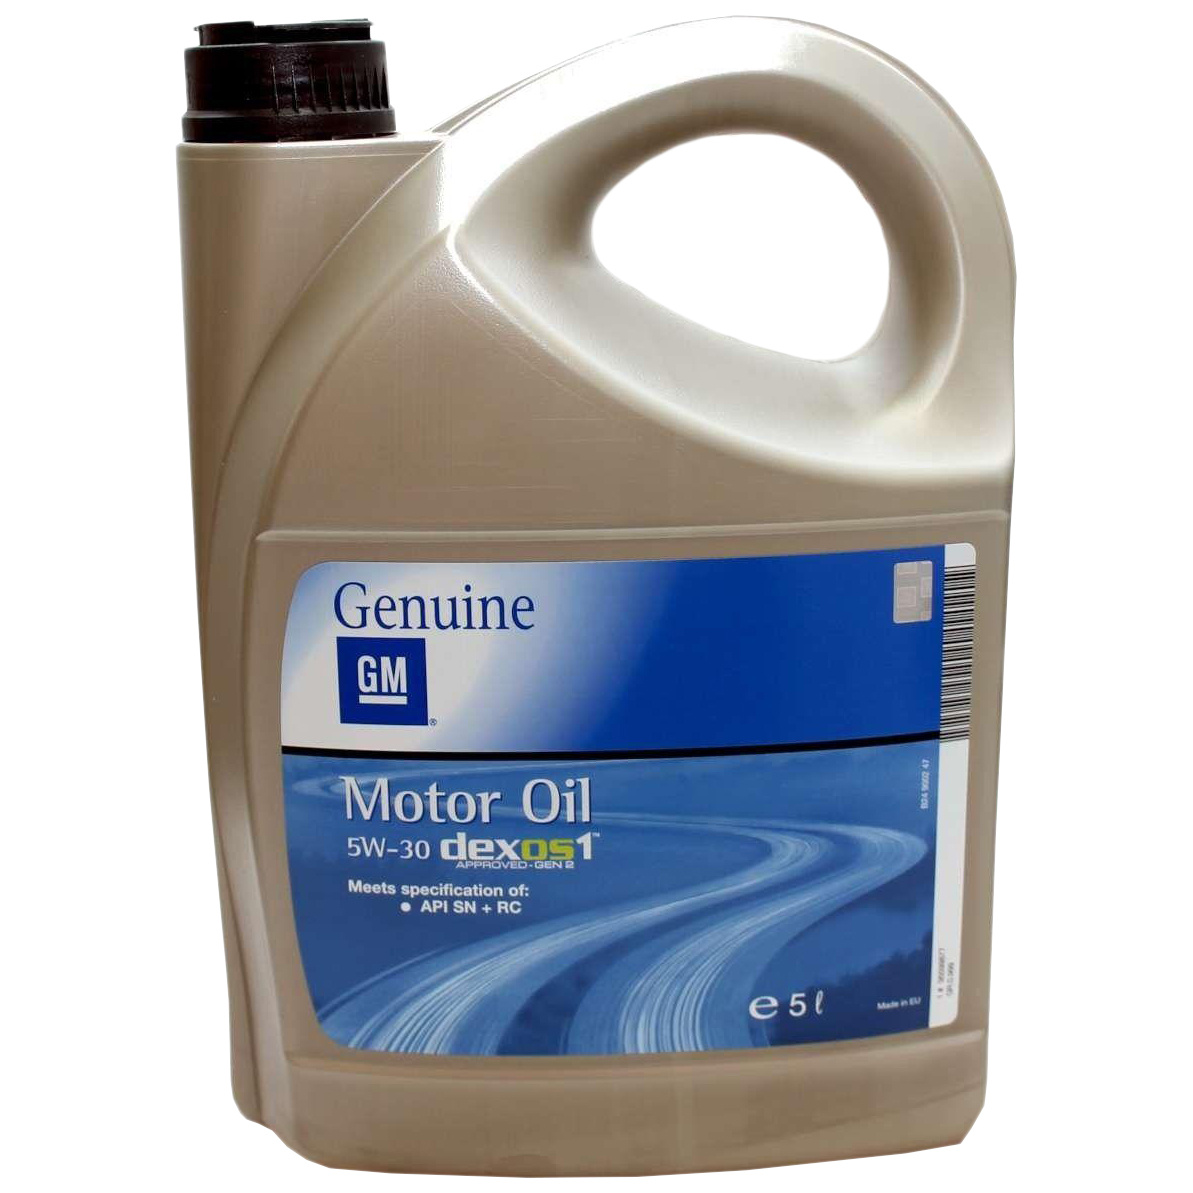 Моторное масло General Motors cинтетическое GM 5/30 Dexos1 5л